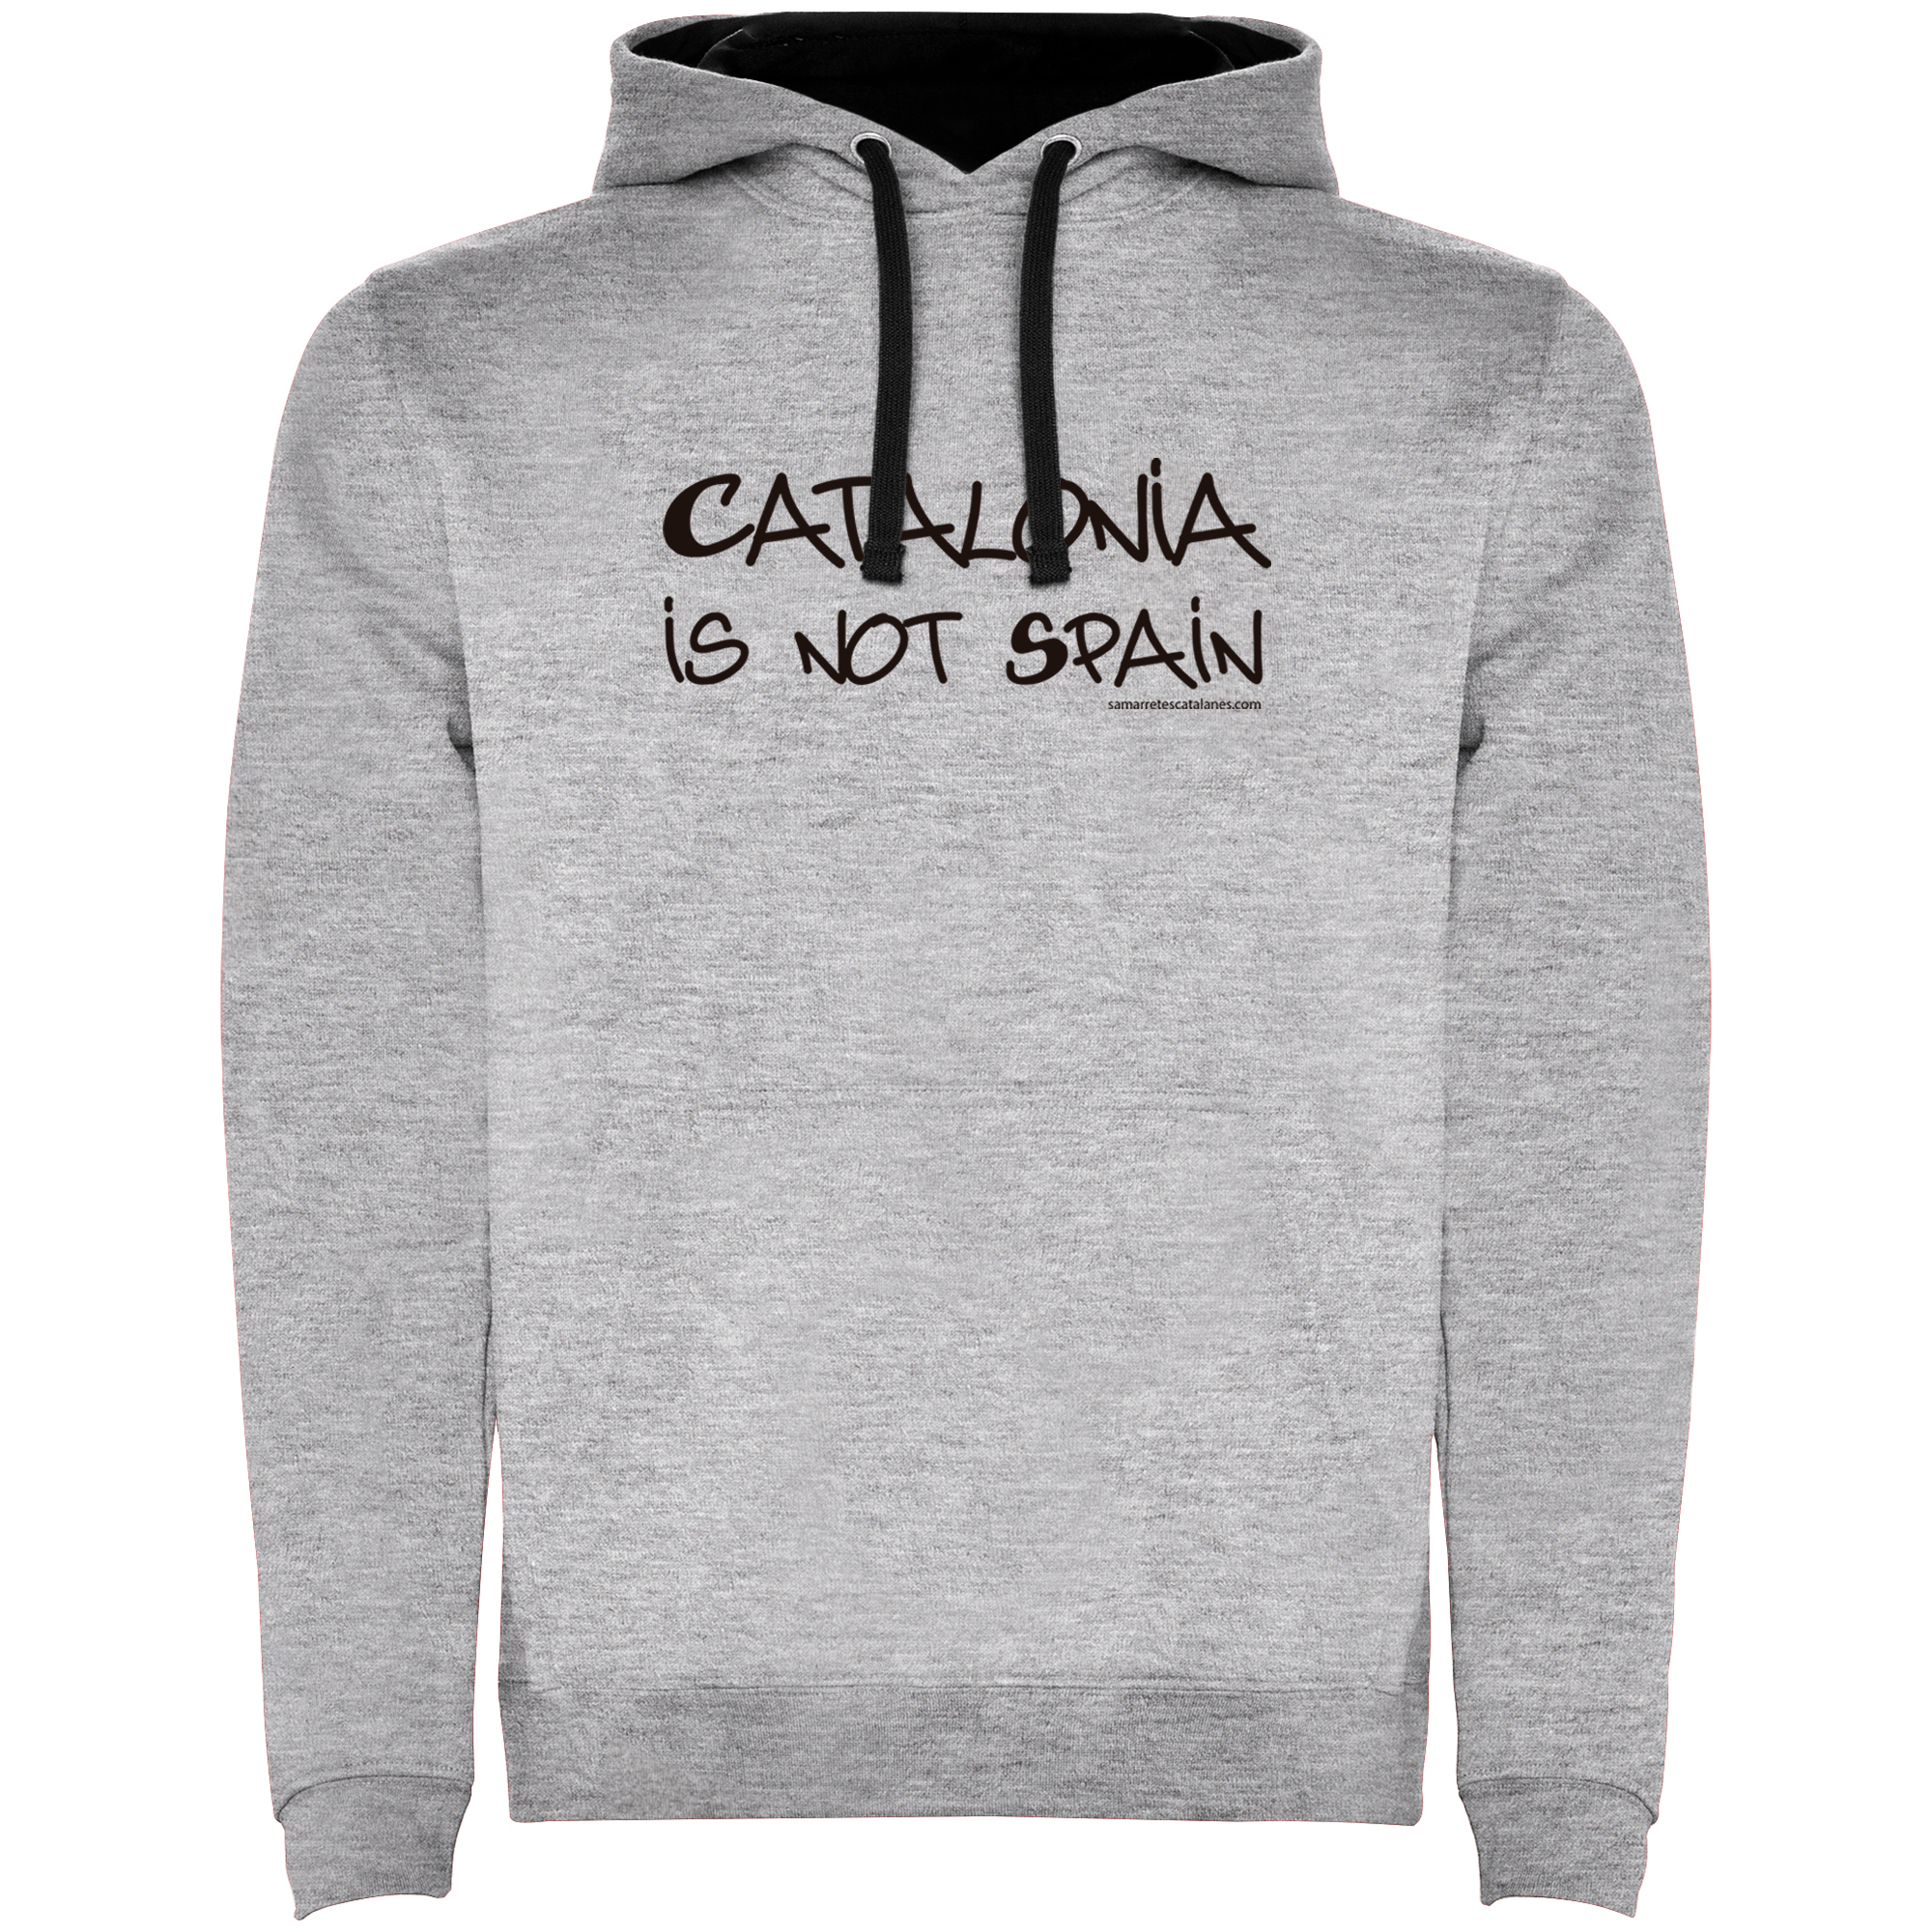 Felpa Catalogna Catalonia is not Spain Unisex